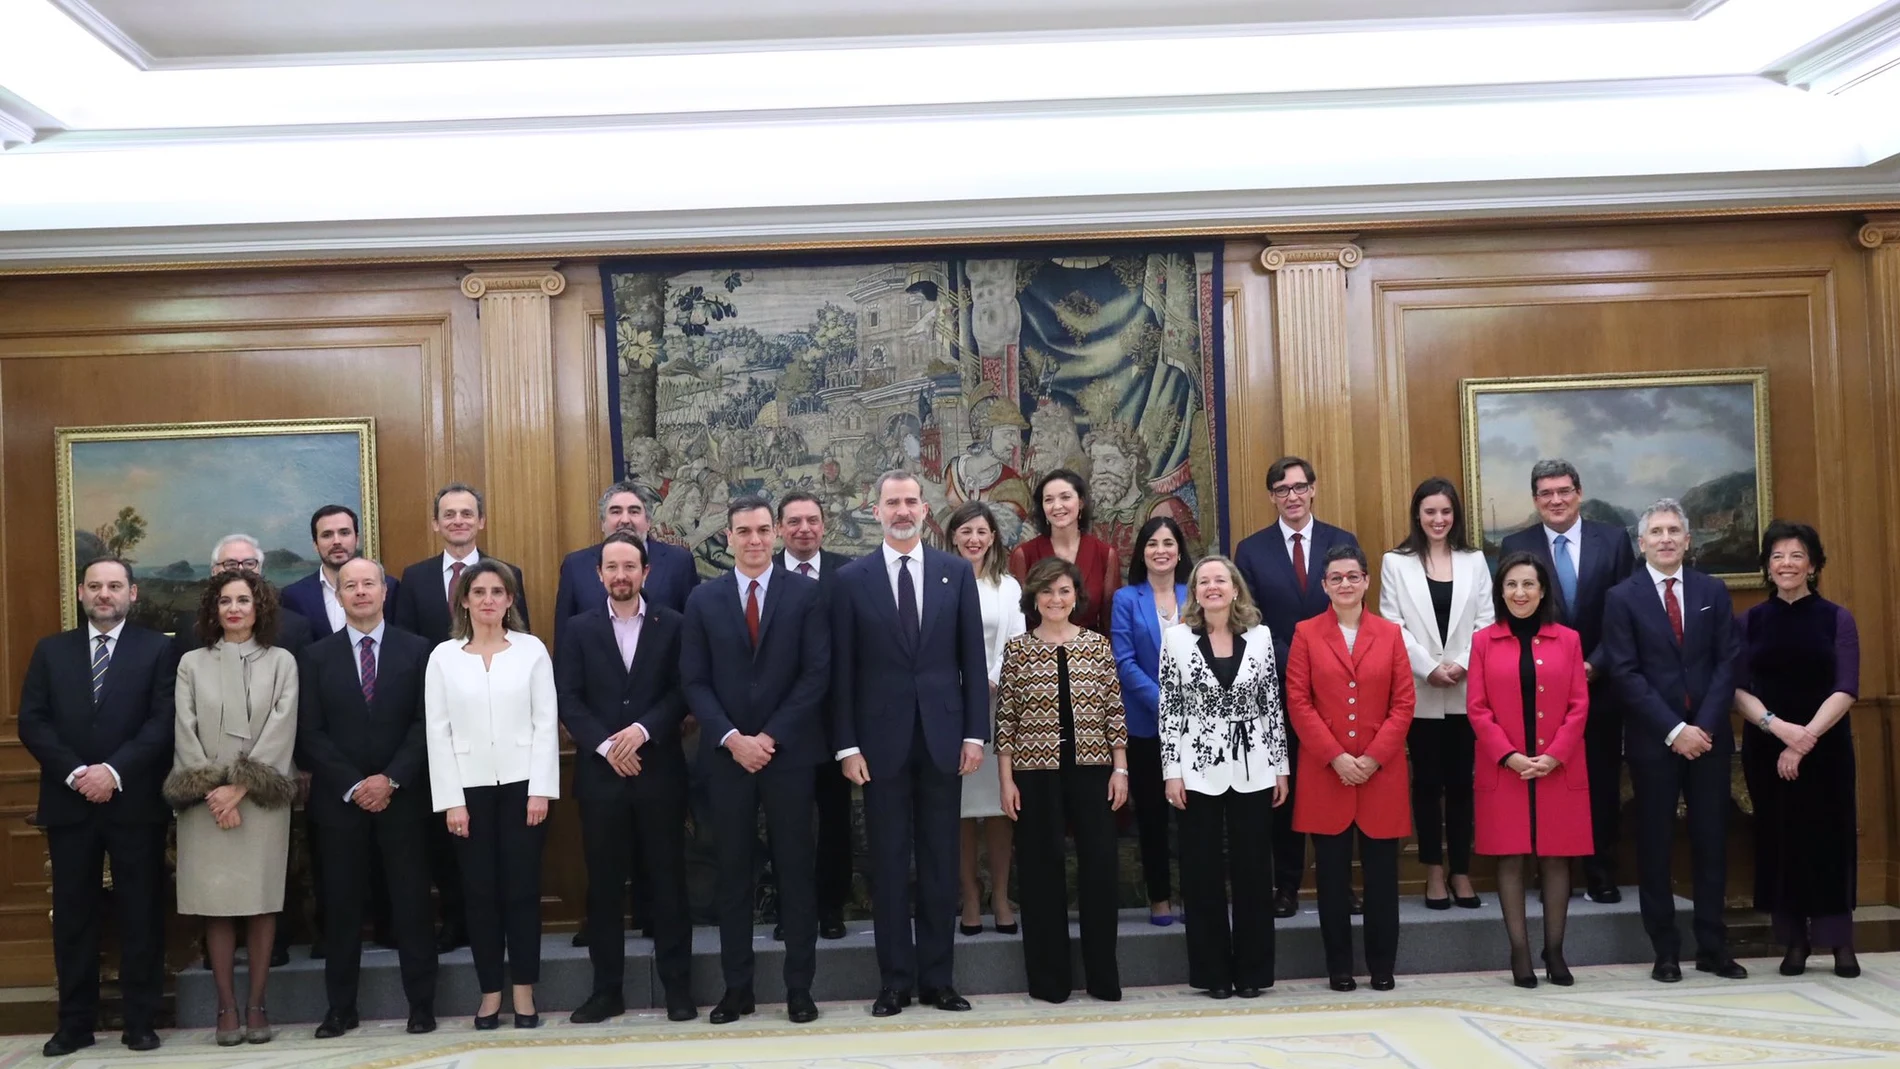 Foto de familia del nuevo Gobierno publicada por la Casa Real en Twitter